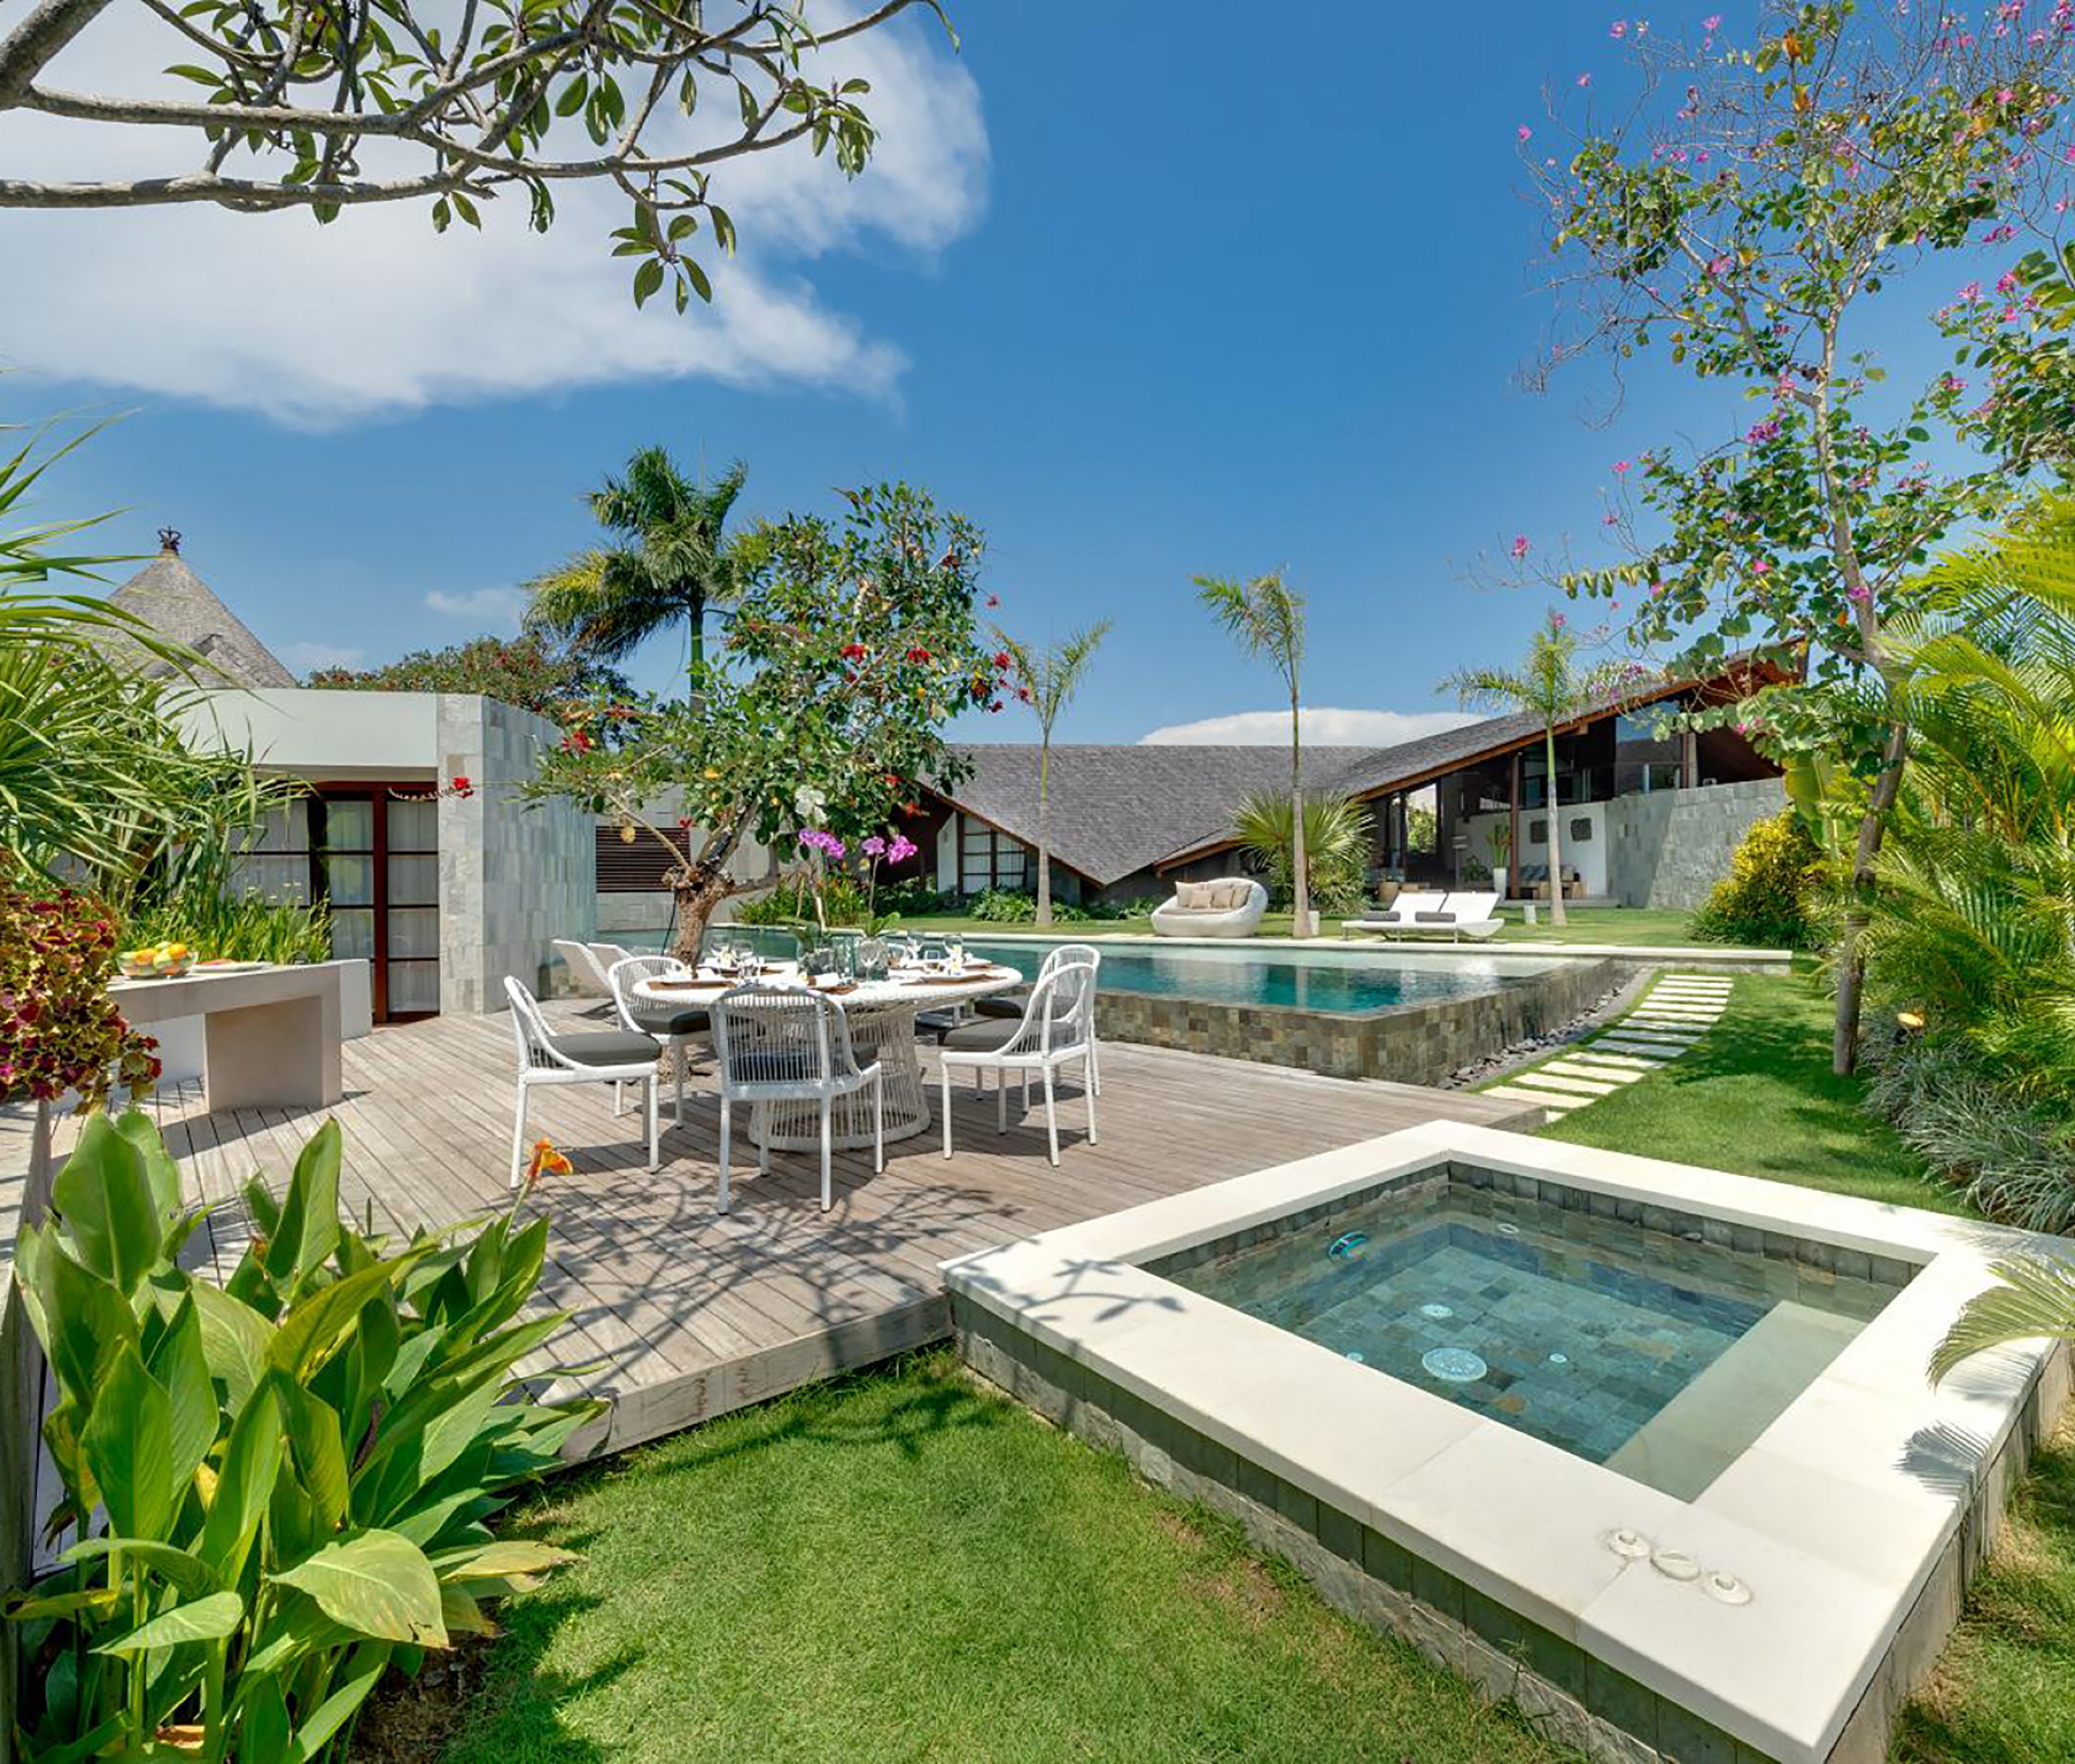 Seminyak 4630 - The Layar 5 - Villas in Seminyak, Bali with private pools